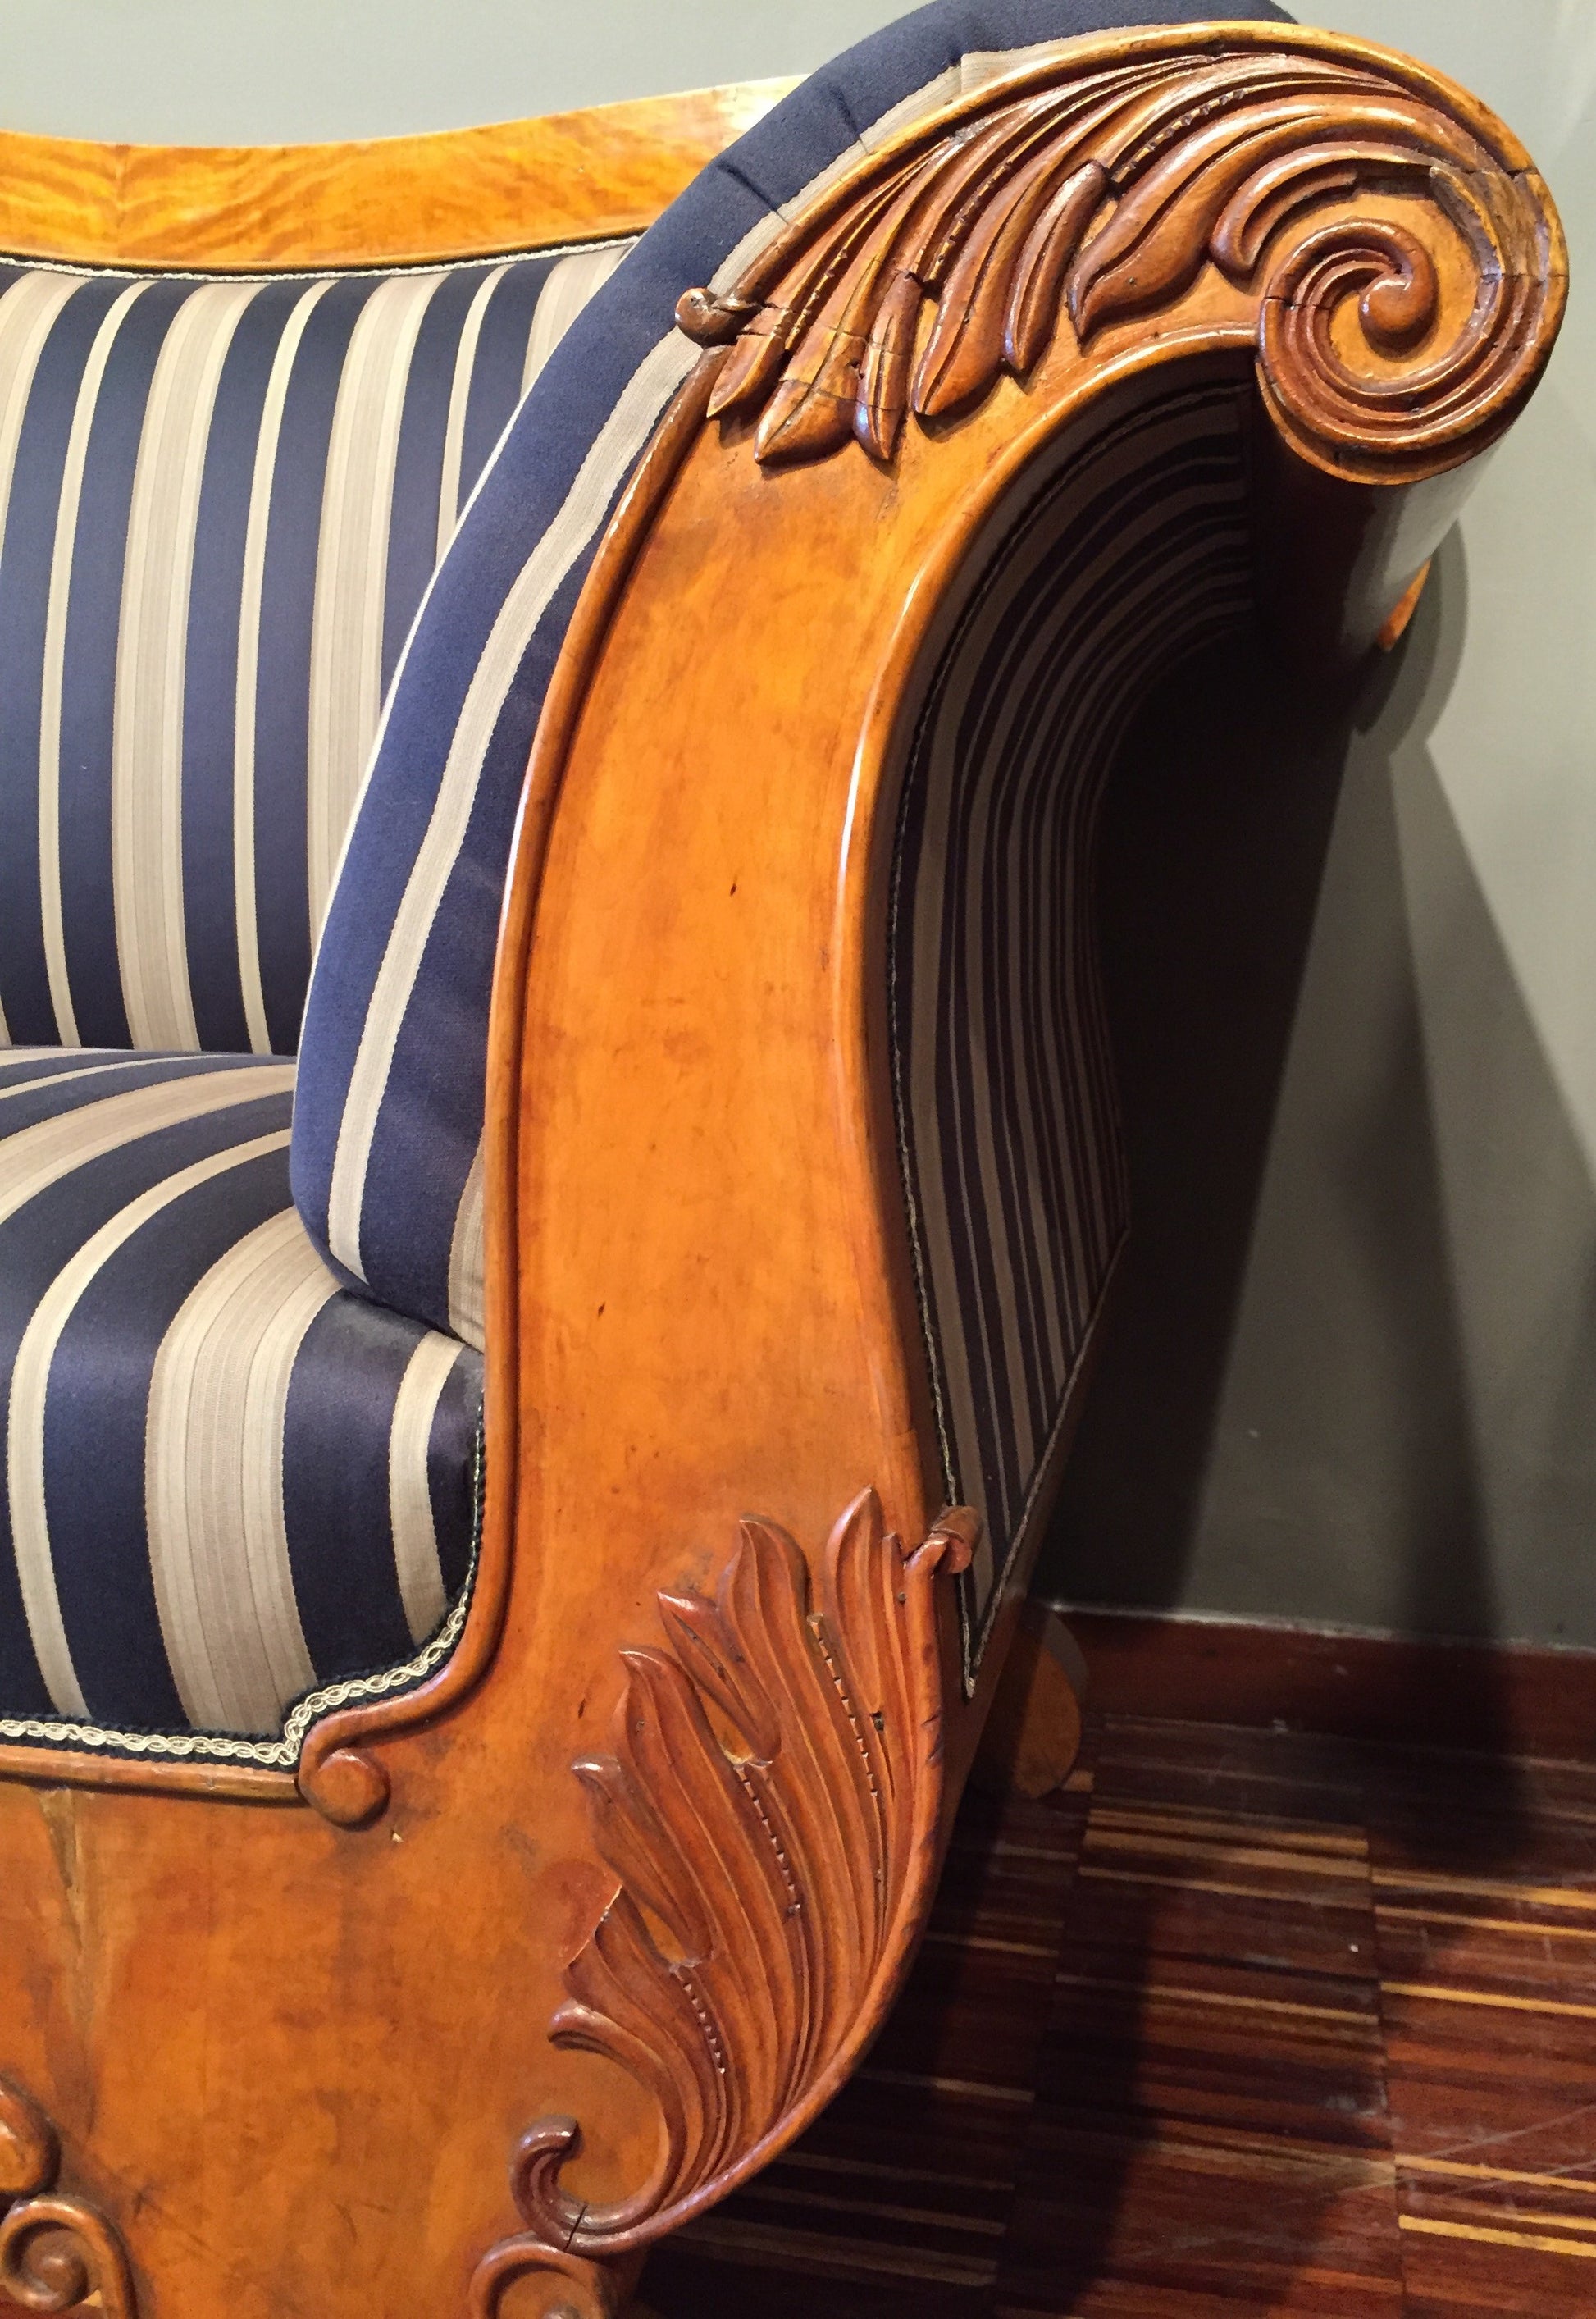 Antico divano Svedese biedermeier in betulla, intagliato del 1800